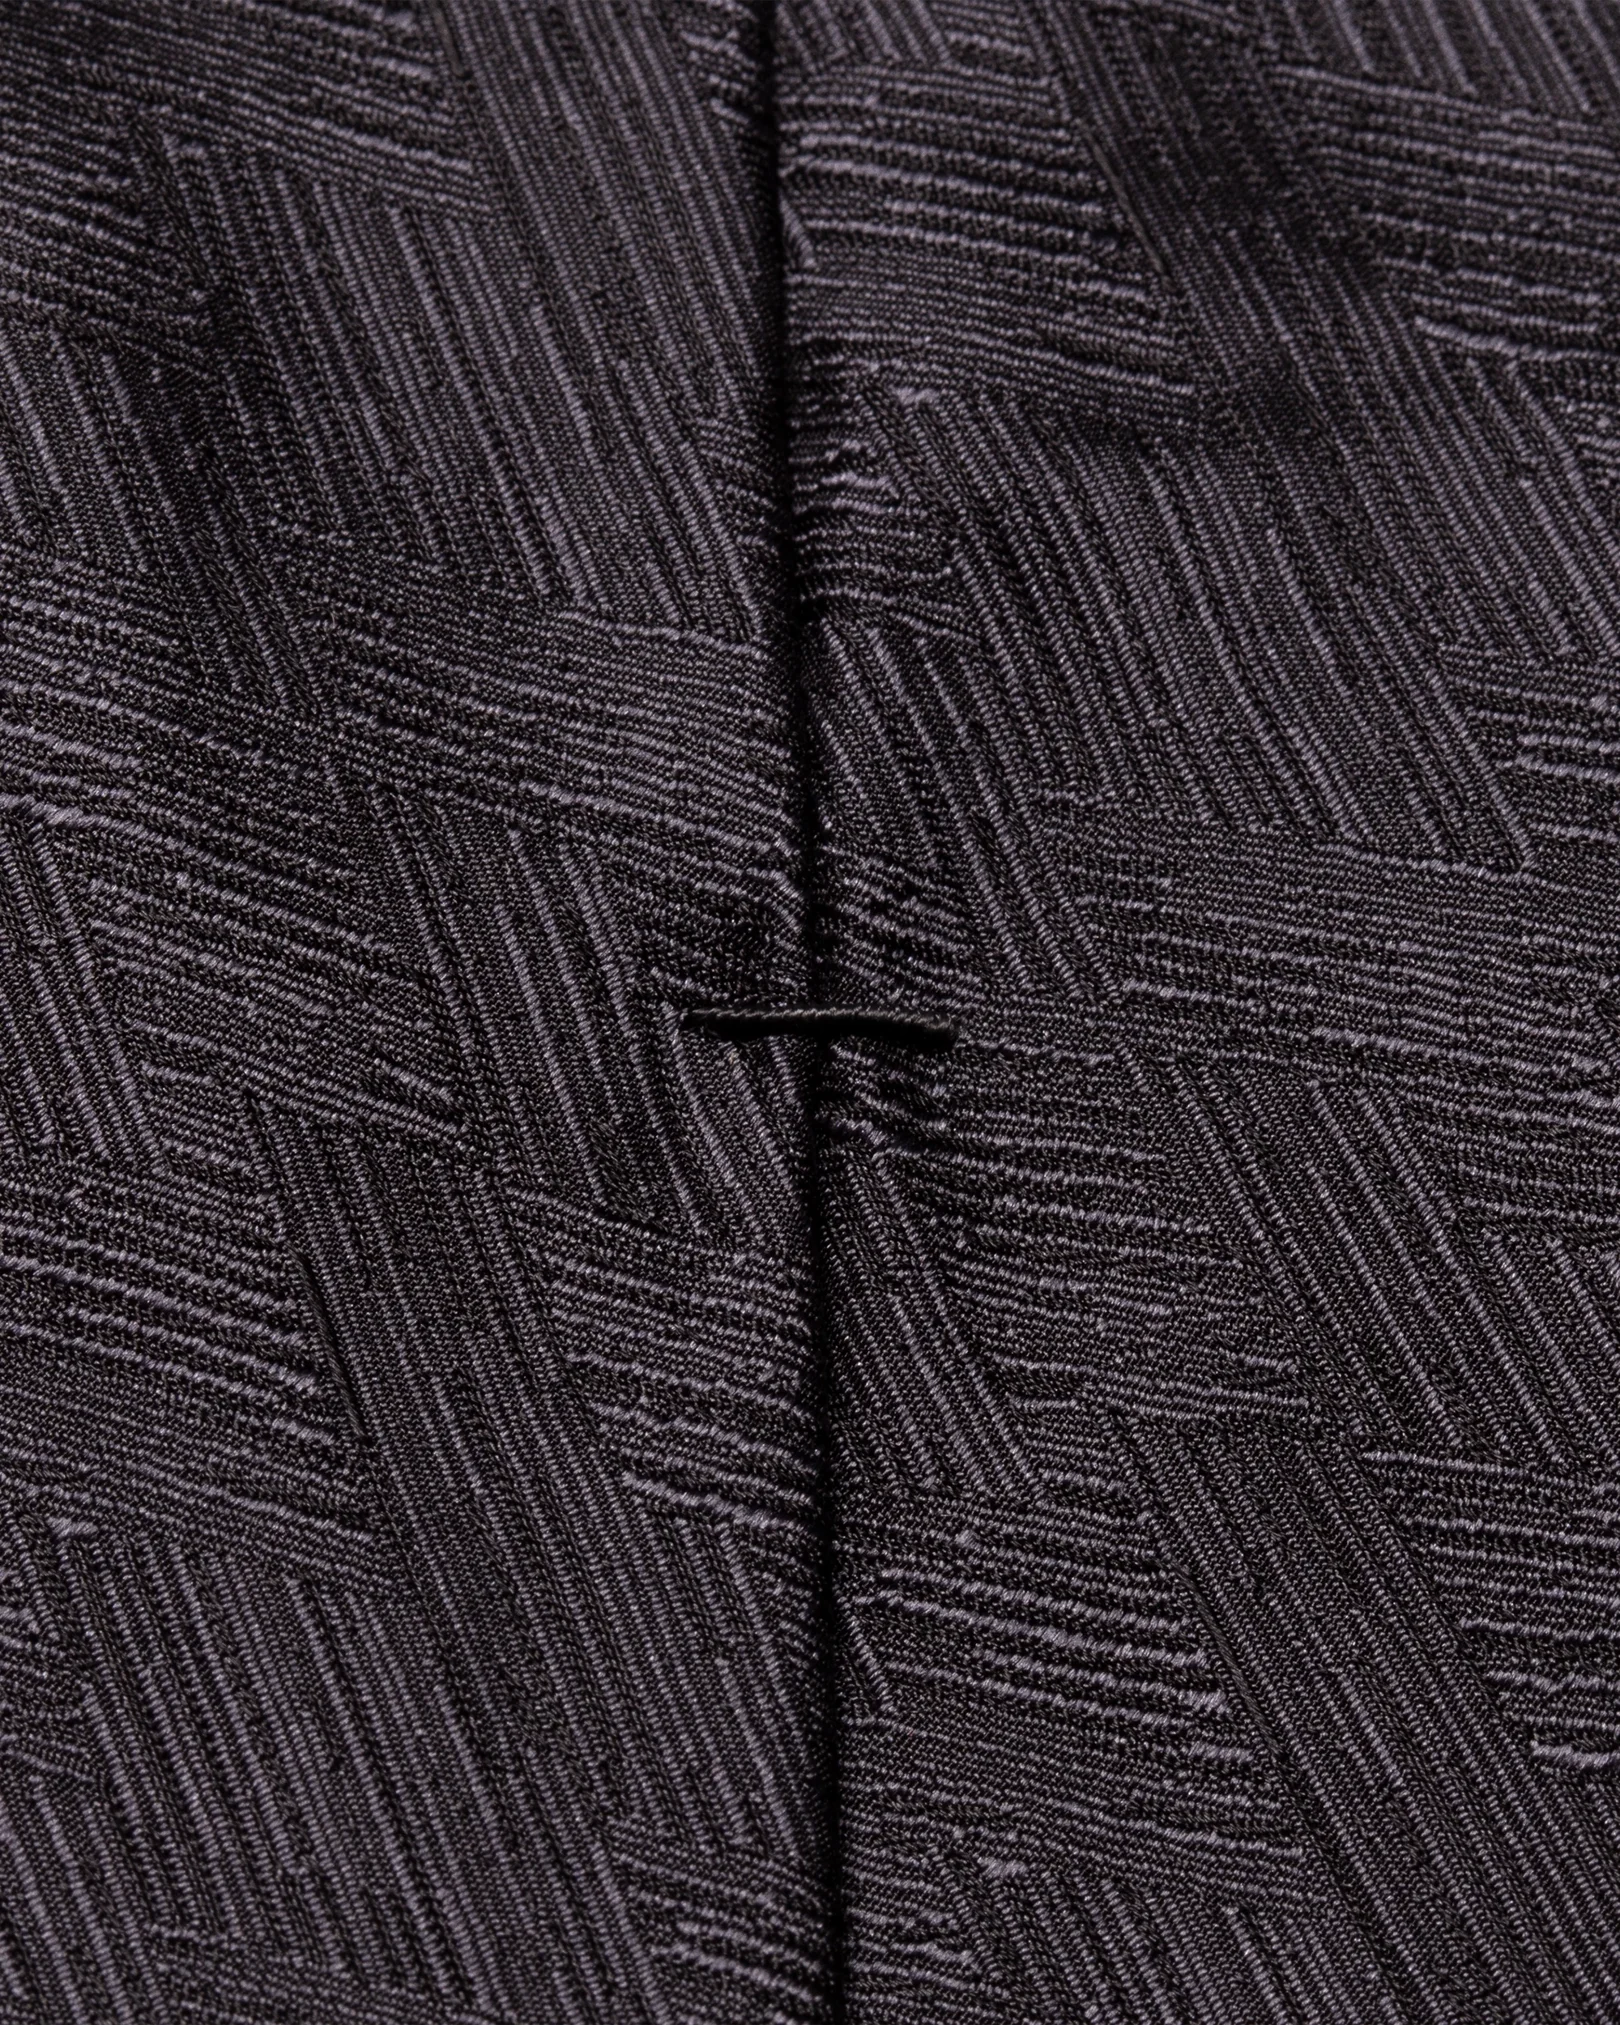 Eton - dark grey evening silk tie